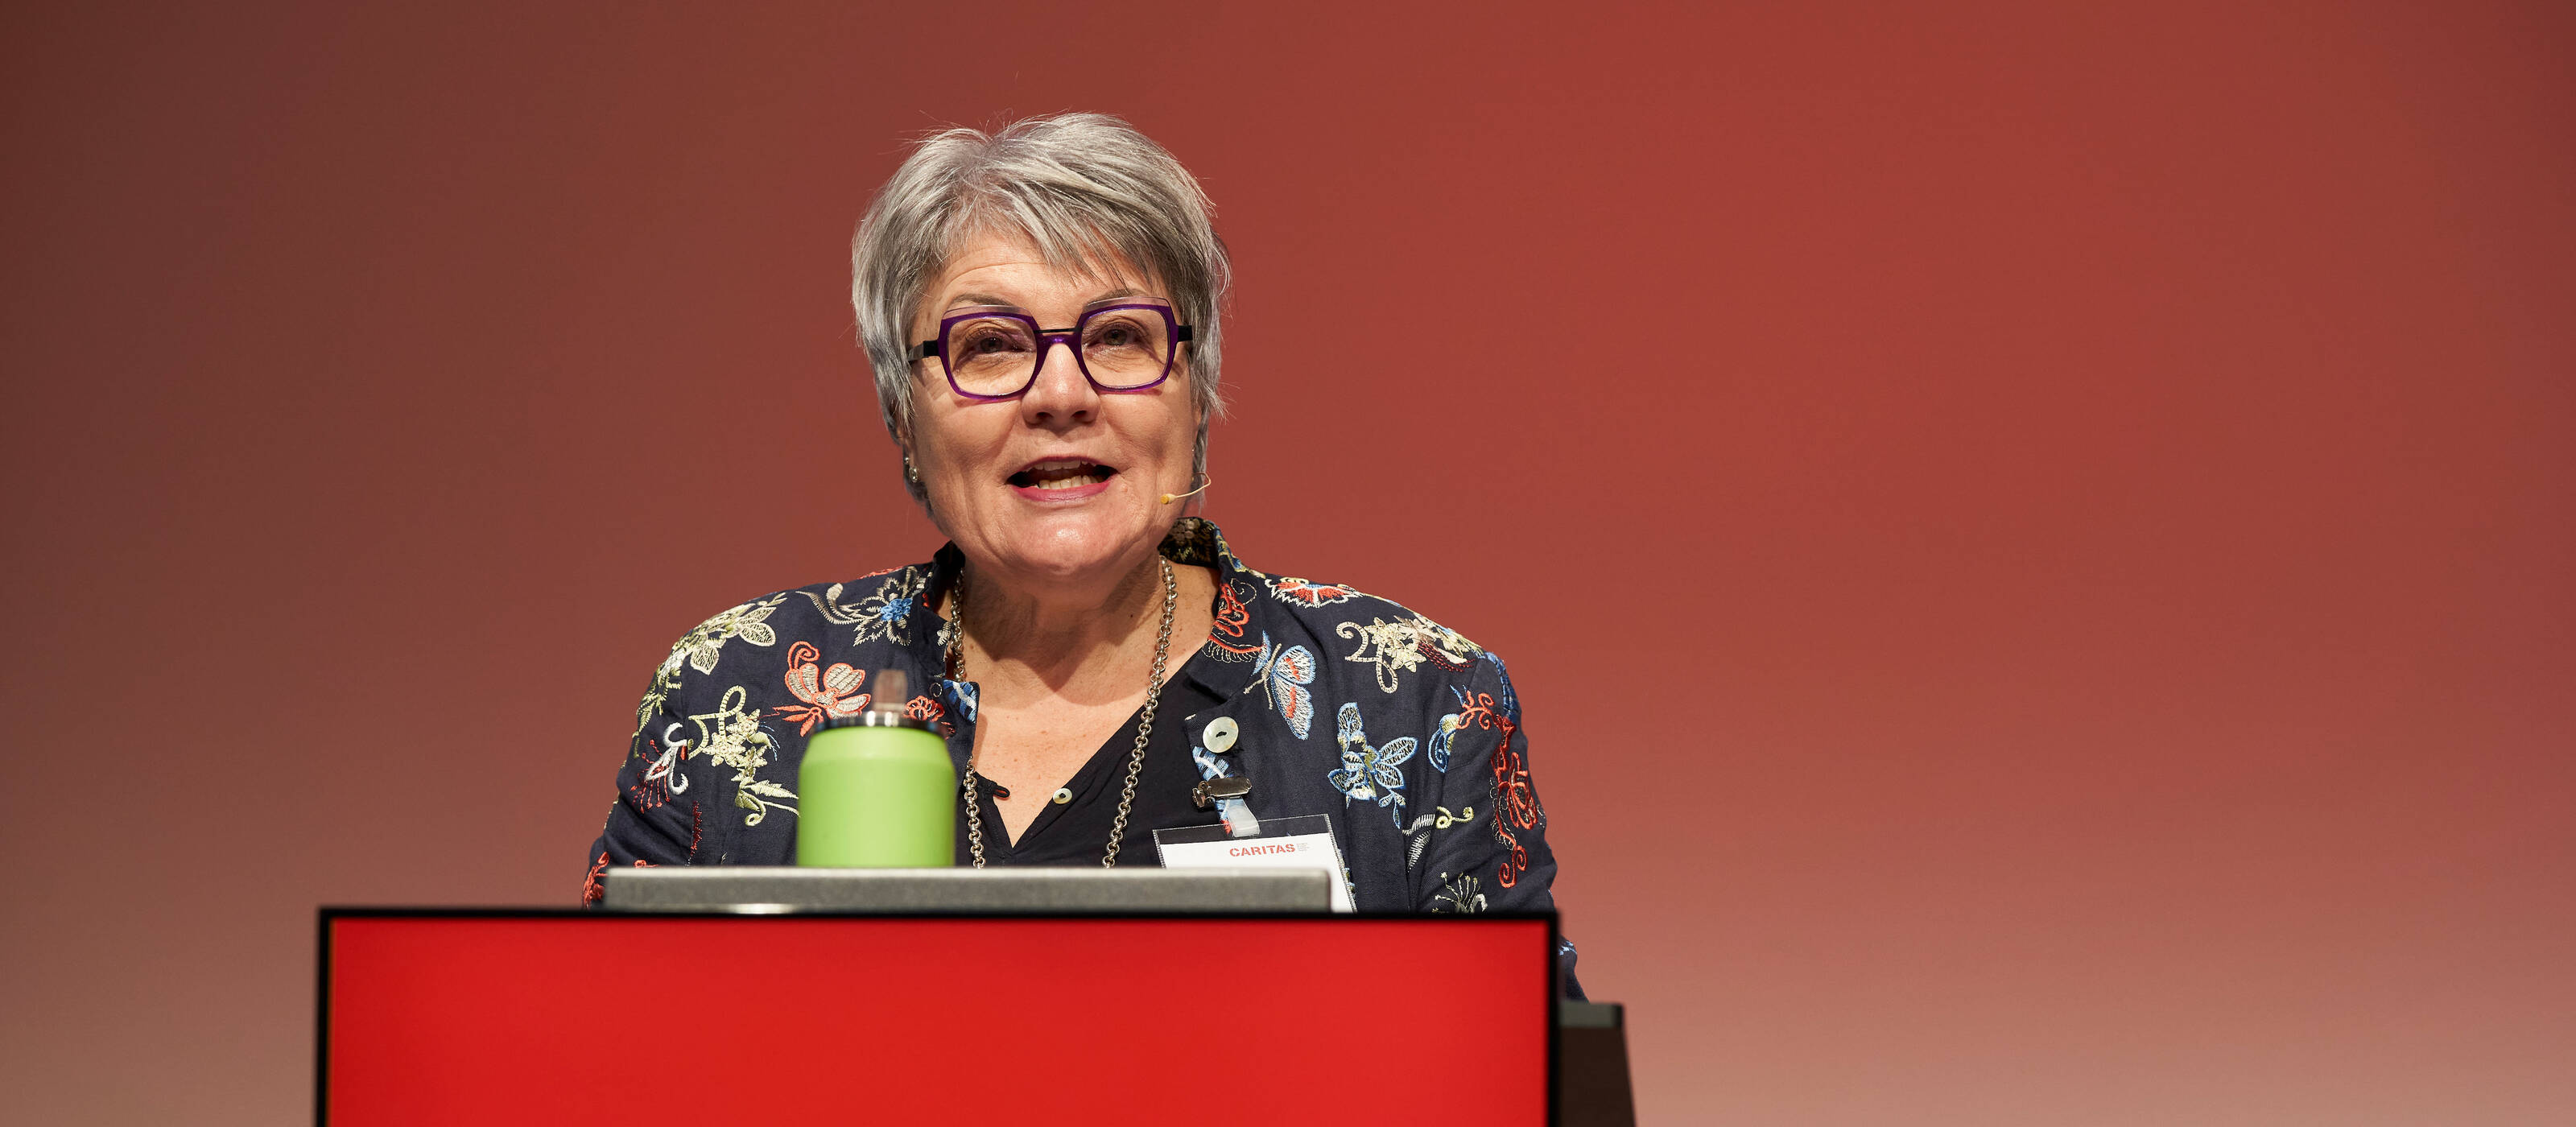 Monika Maire-Hefti, Präsidentin von Caritas Schweiz, eröffnete das Forum zu sozialer Ungleichheit.